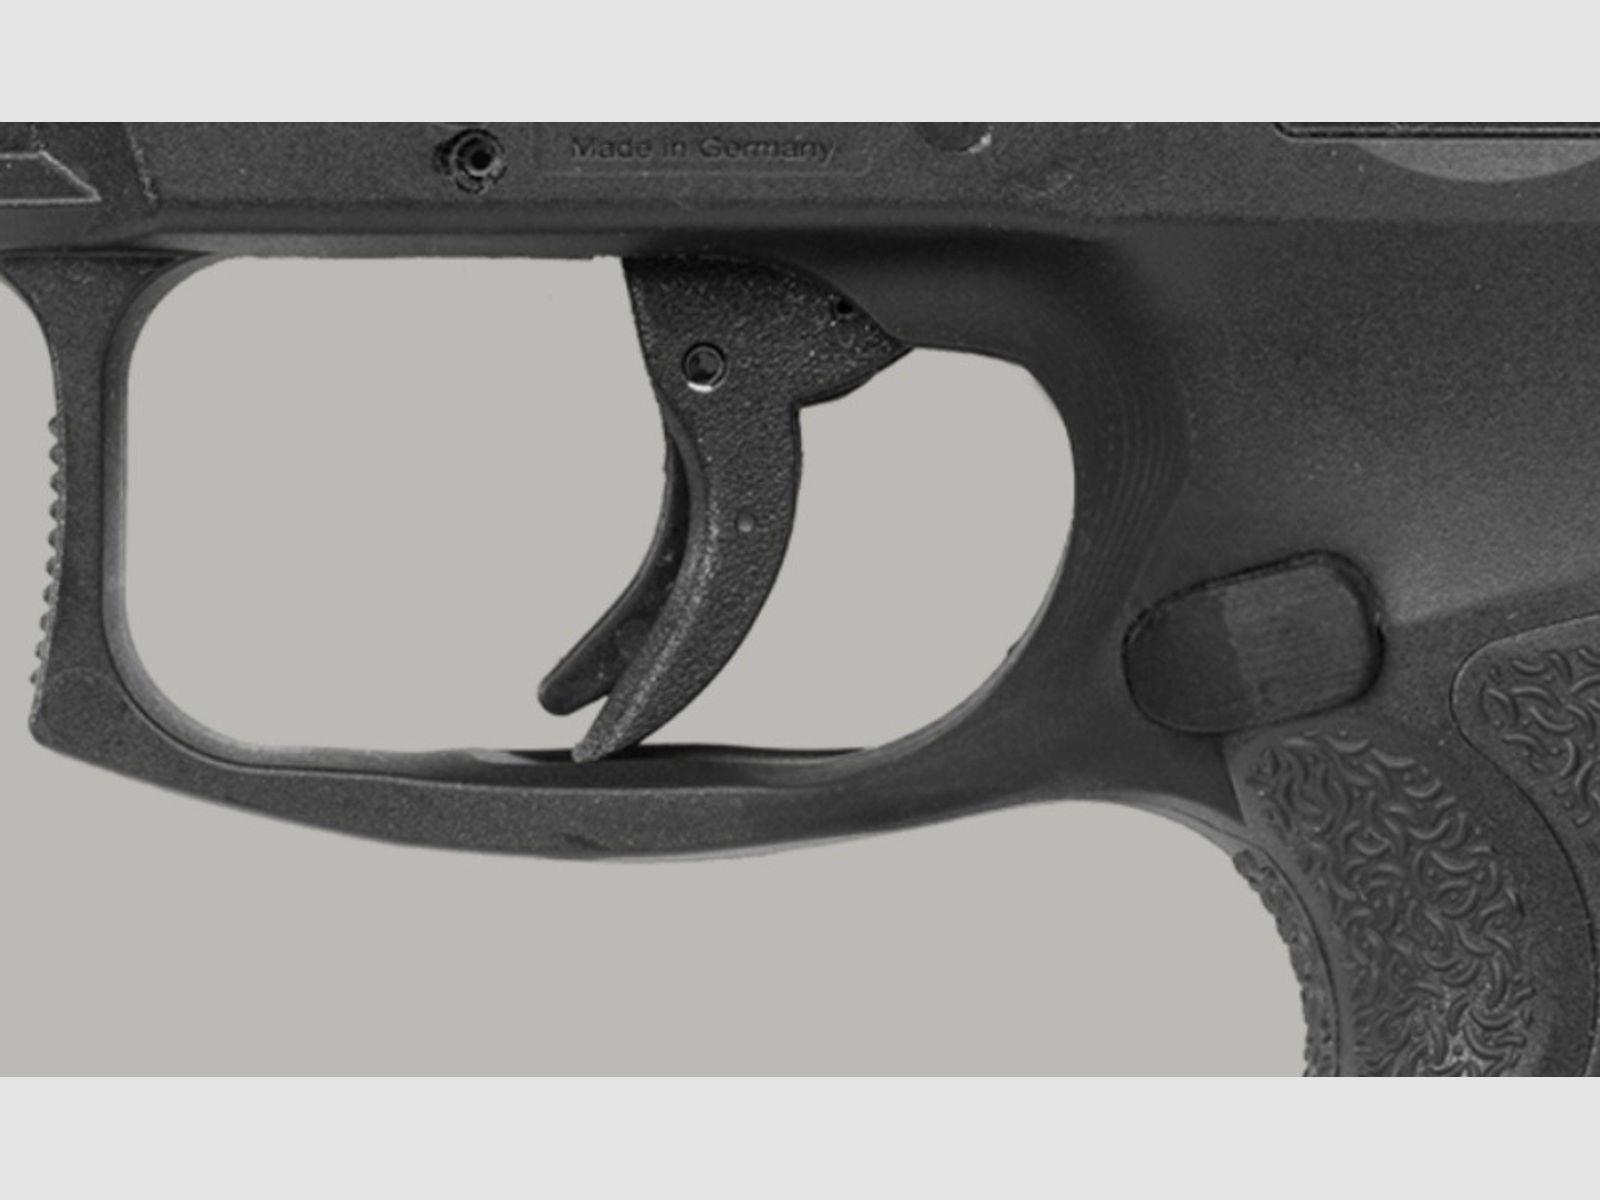 Heckler & Koch - SFP9 OR (Optical Ready), Kal. 9mm Luger